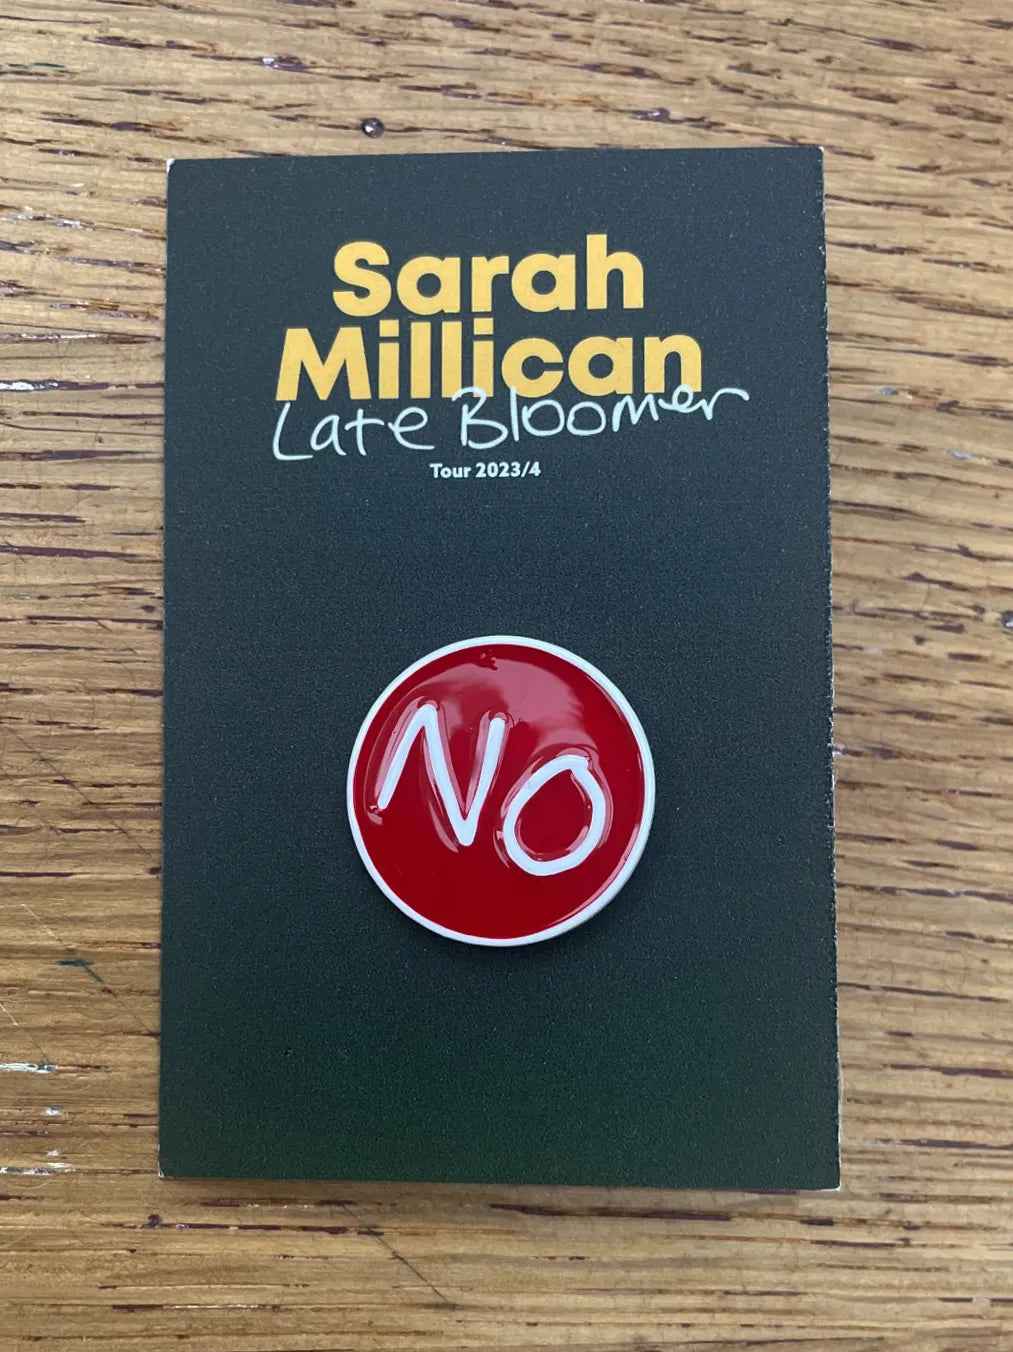 Sarah Millican NO enamel pin badge